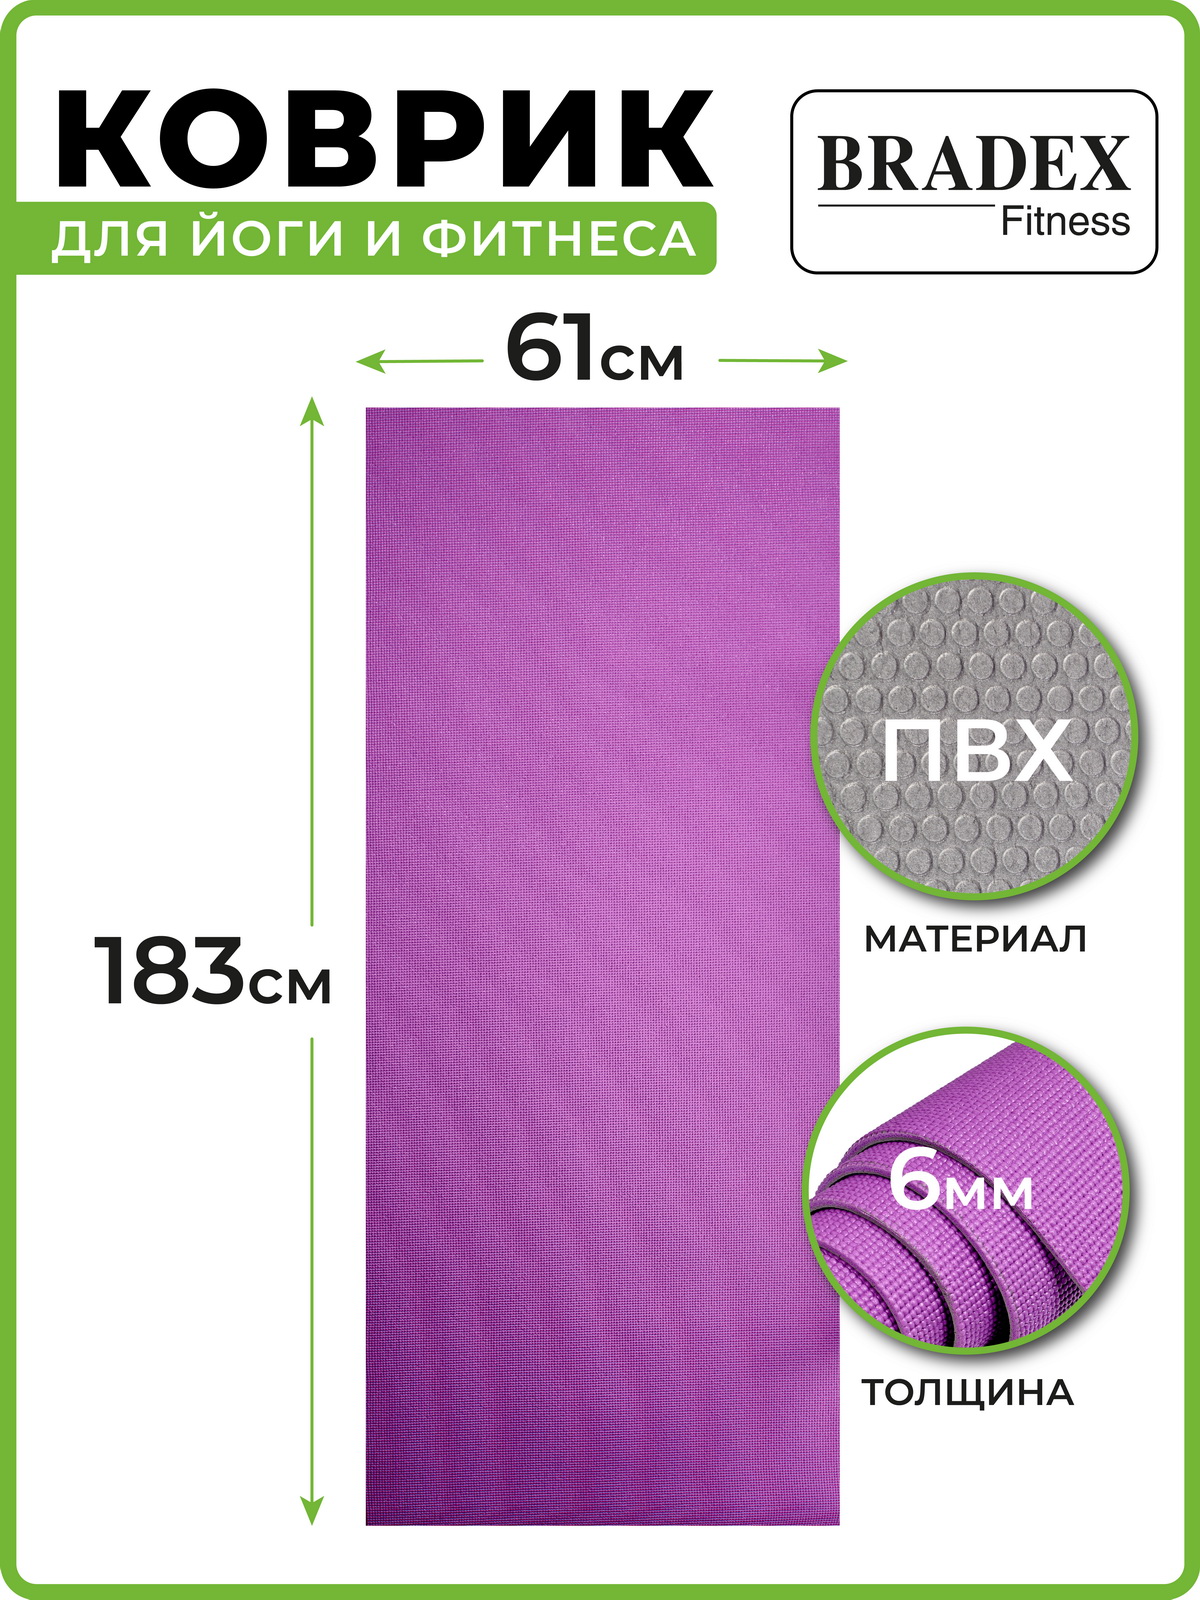 Коврик для йоги и фитнеса Bradex двухслойный фиолетовый 183х61 см - фото 3